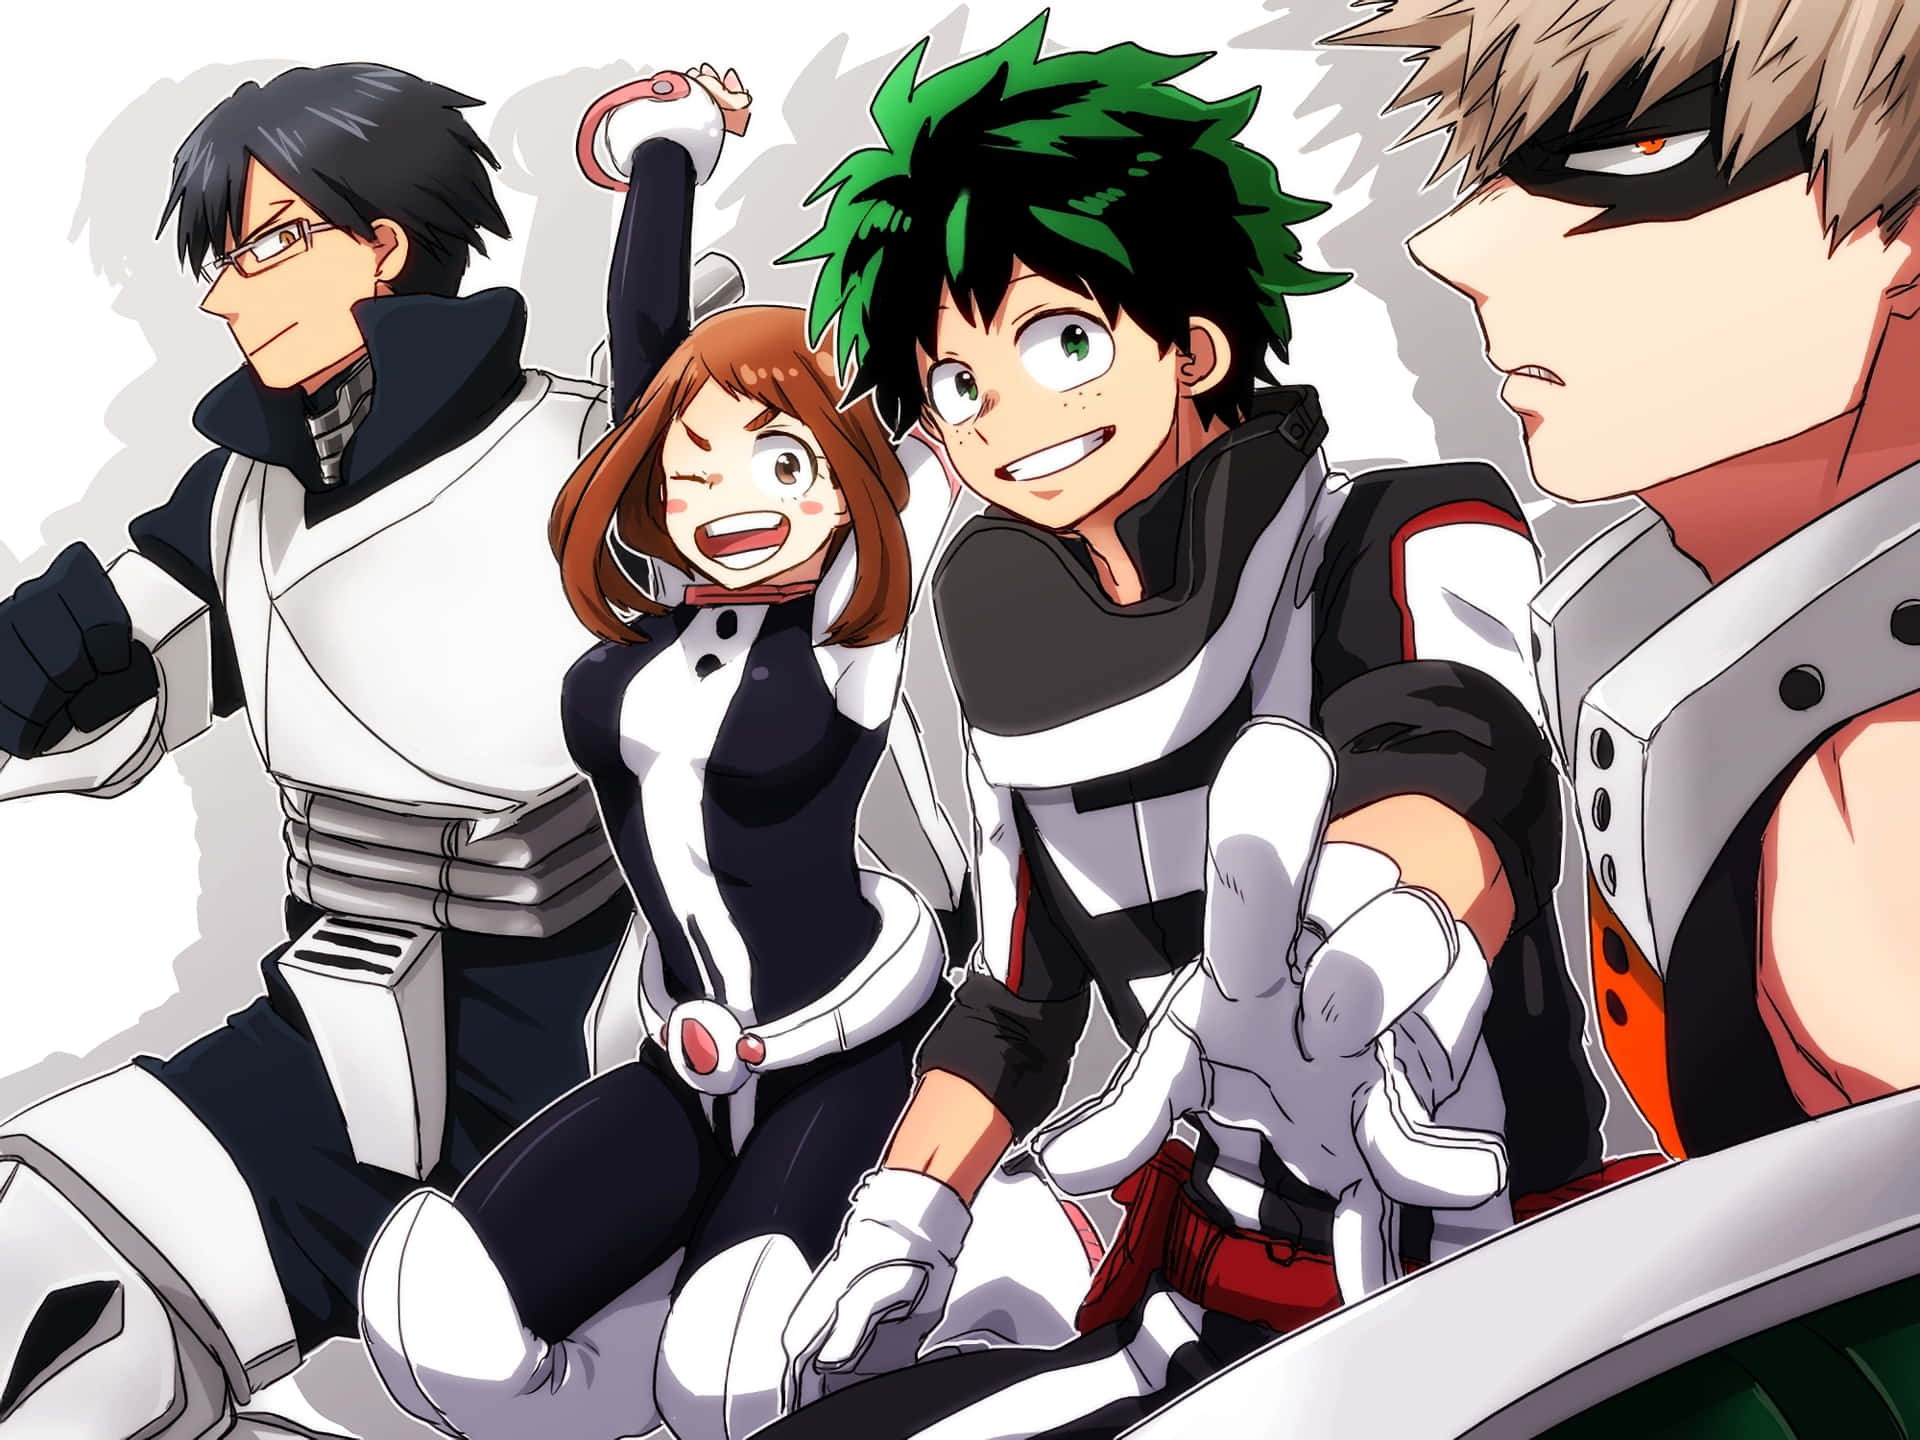 Et gruppe anime personager med deres arme udstrakte i fejring. Wallpaper